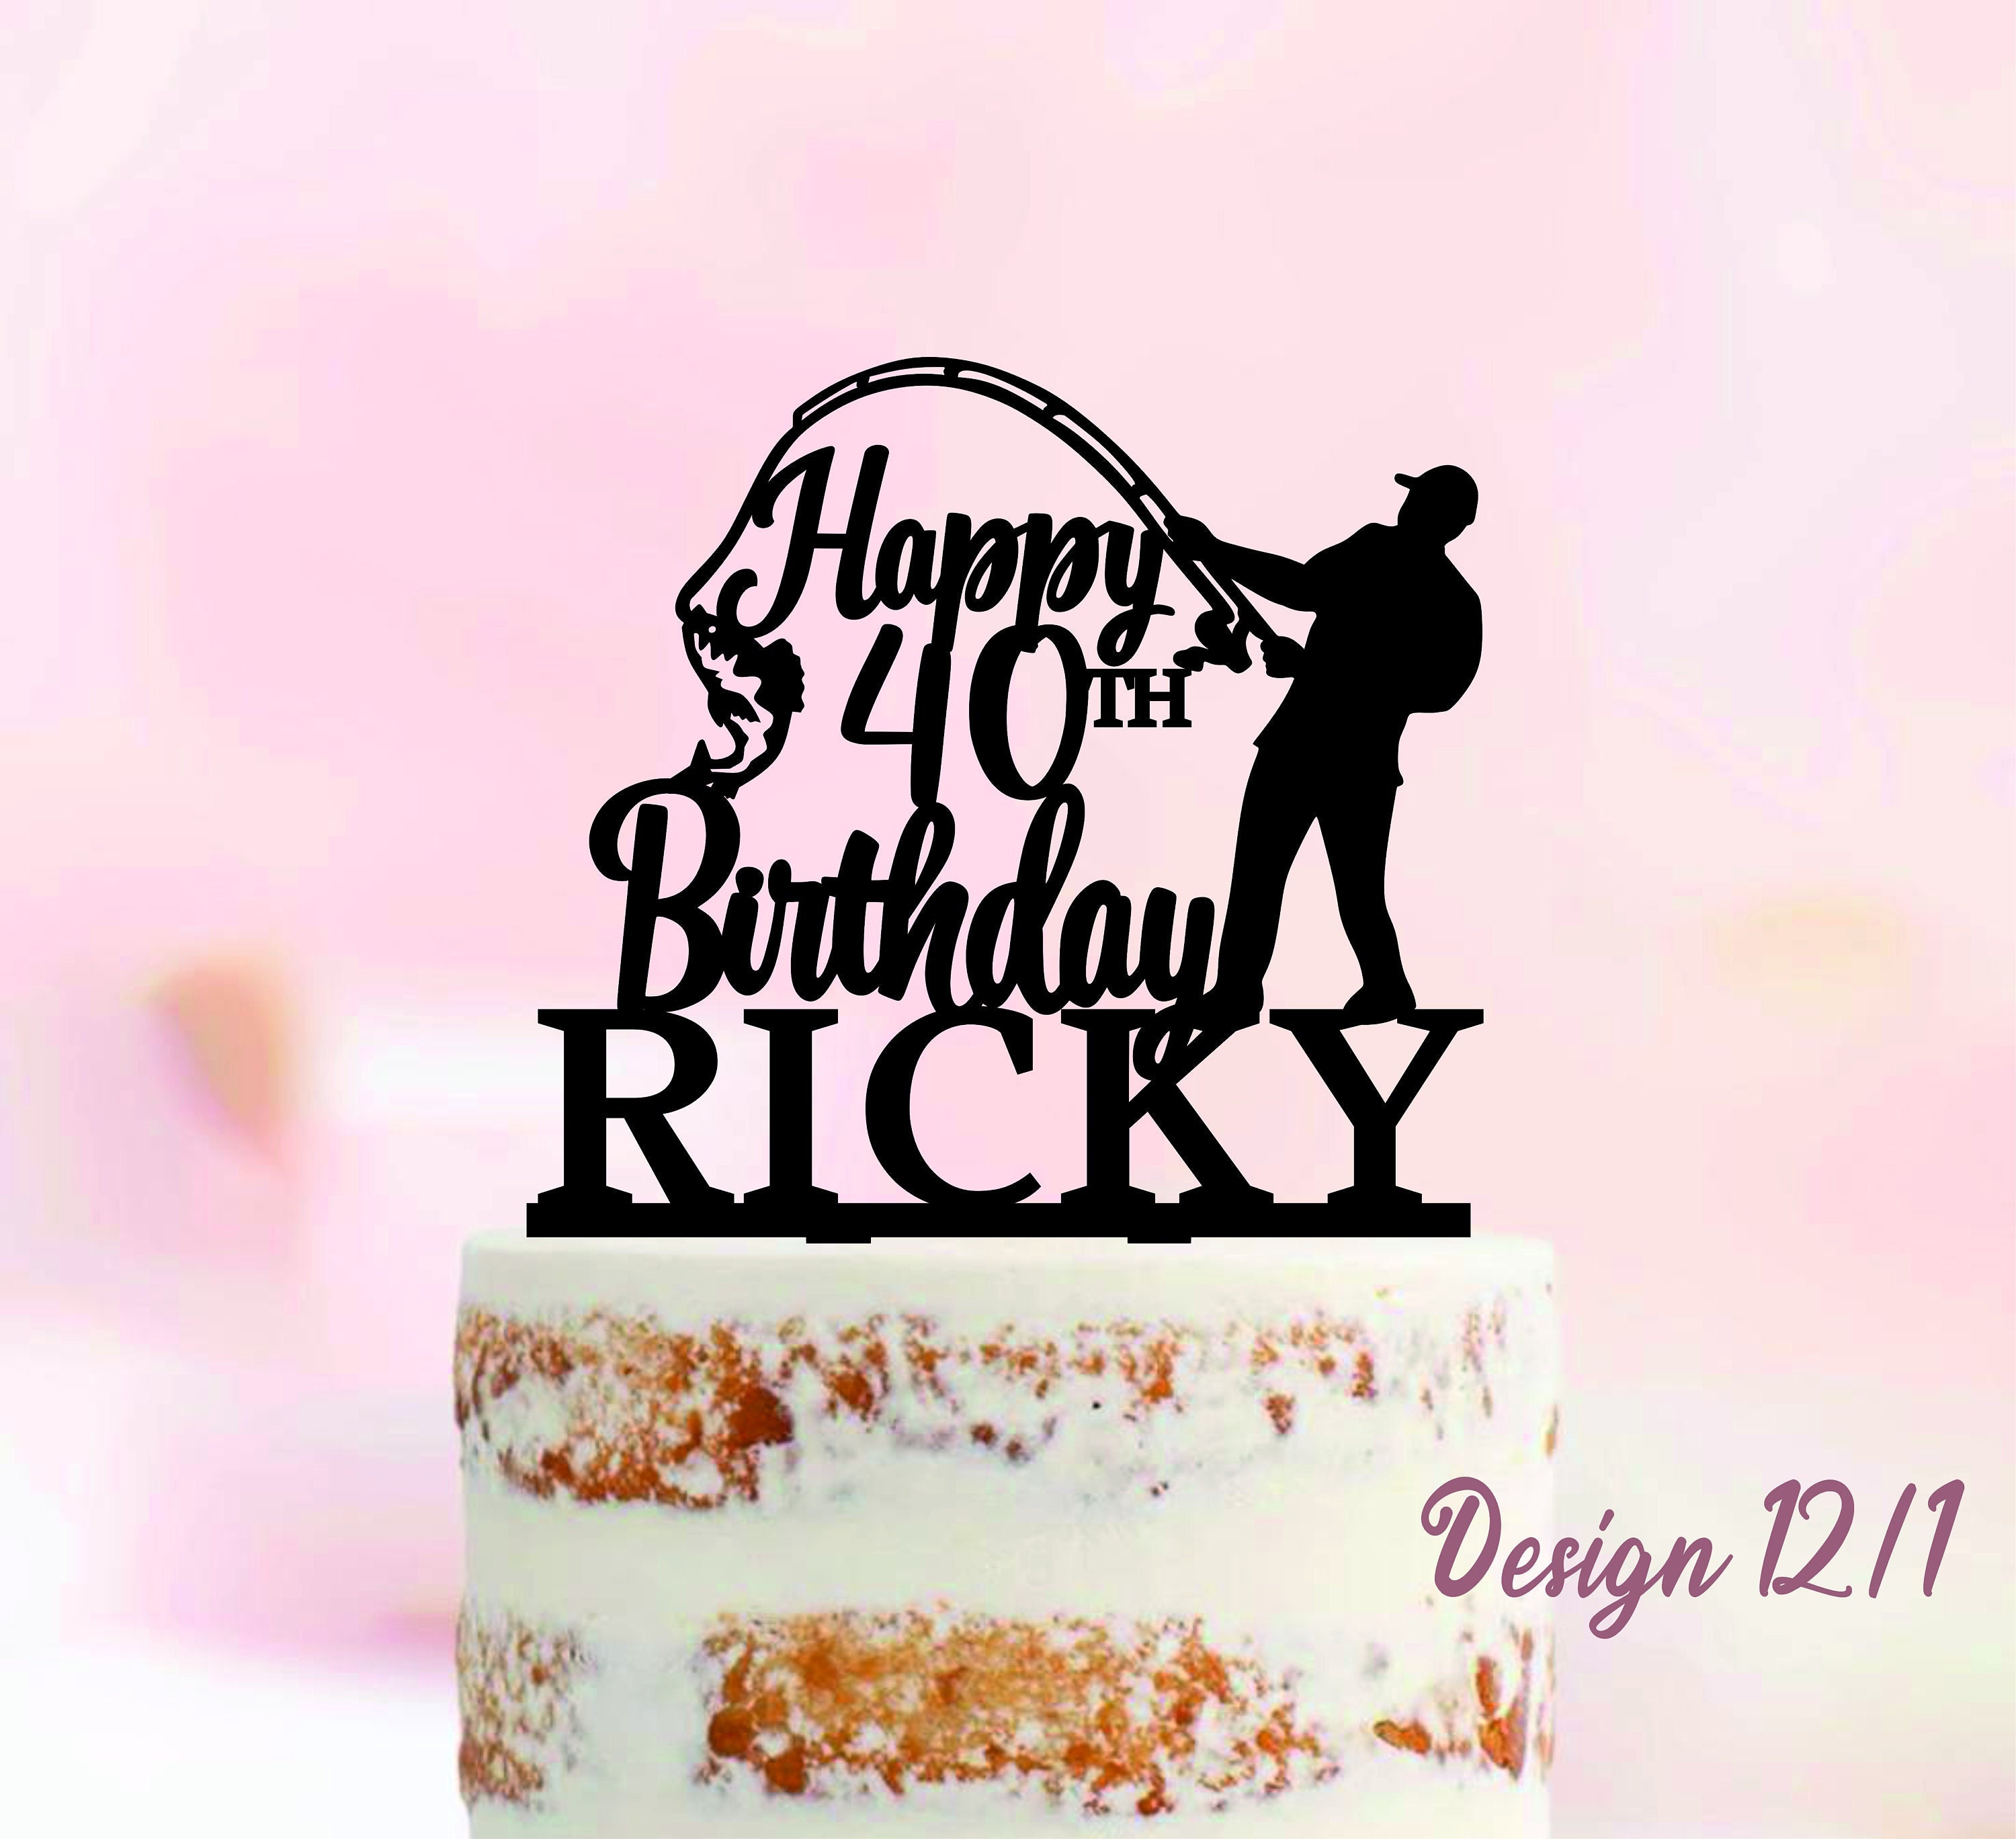 100+ HD Happy Birthday Ricky Cake Images And Shayari